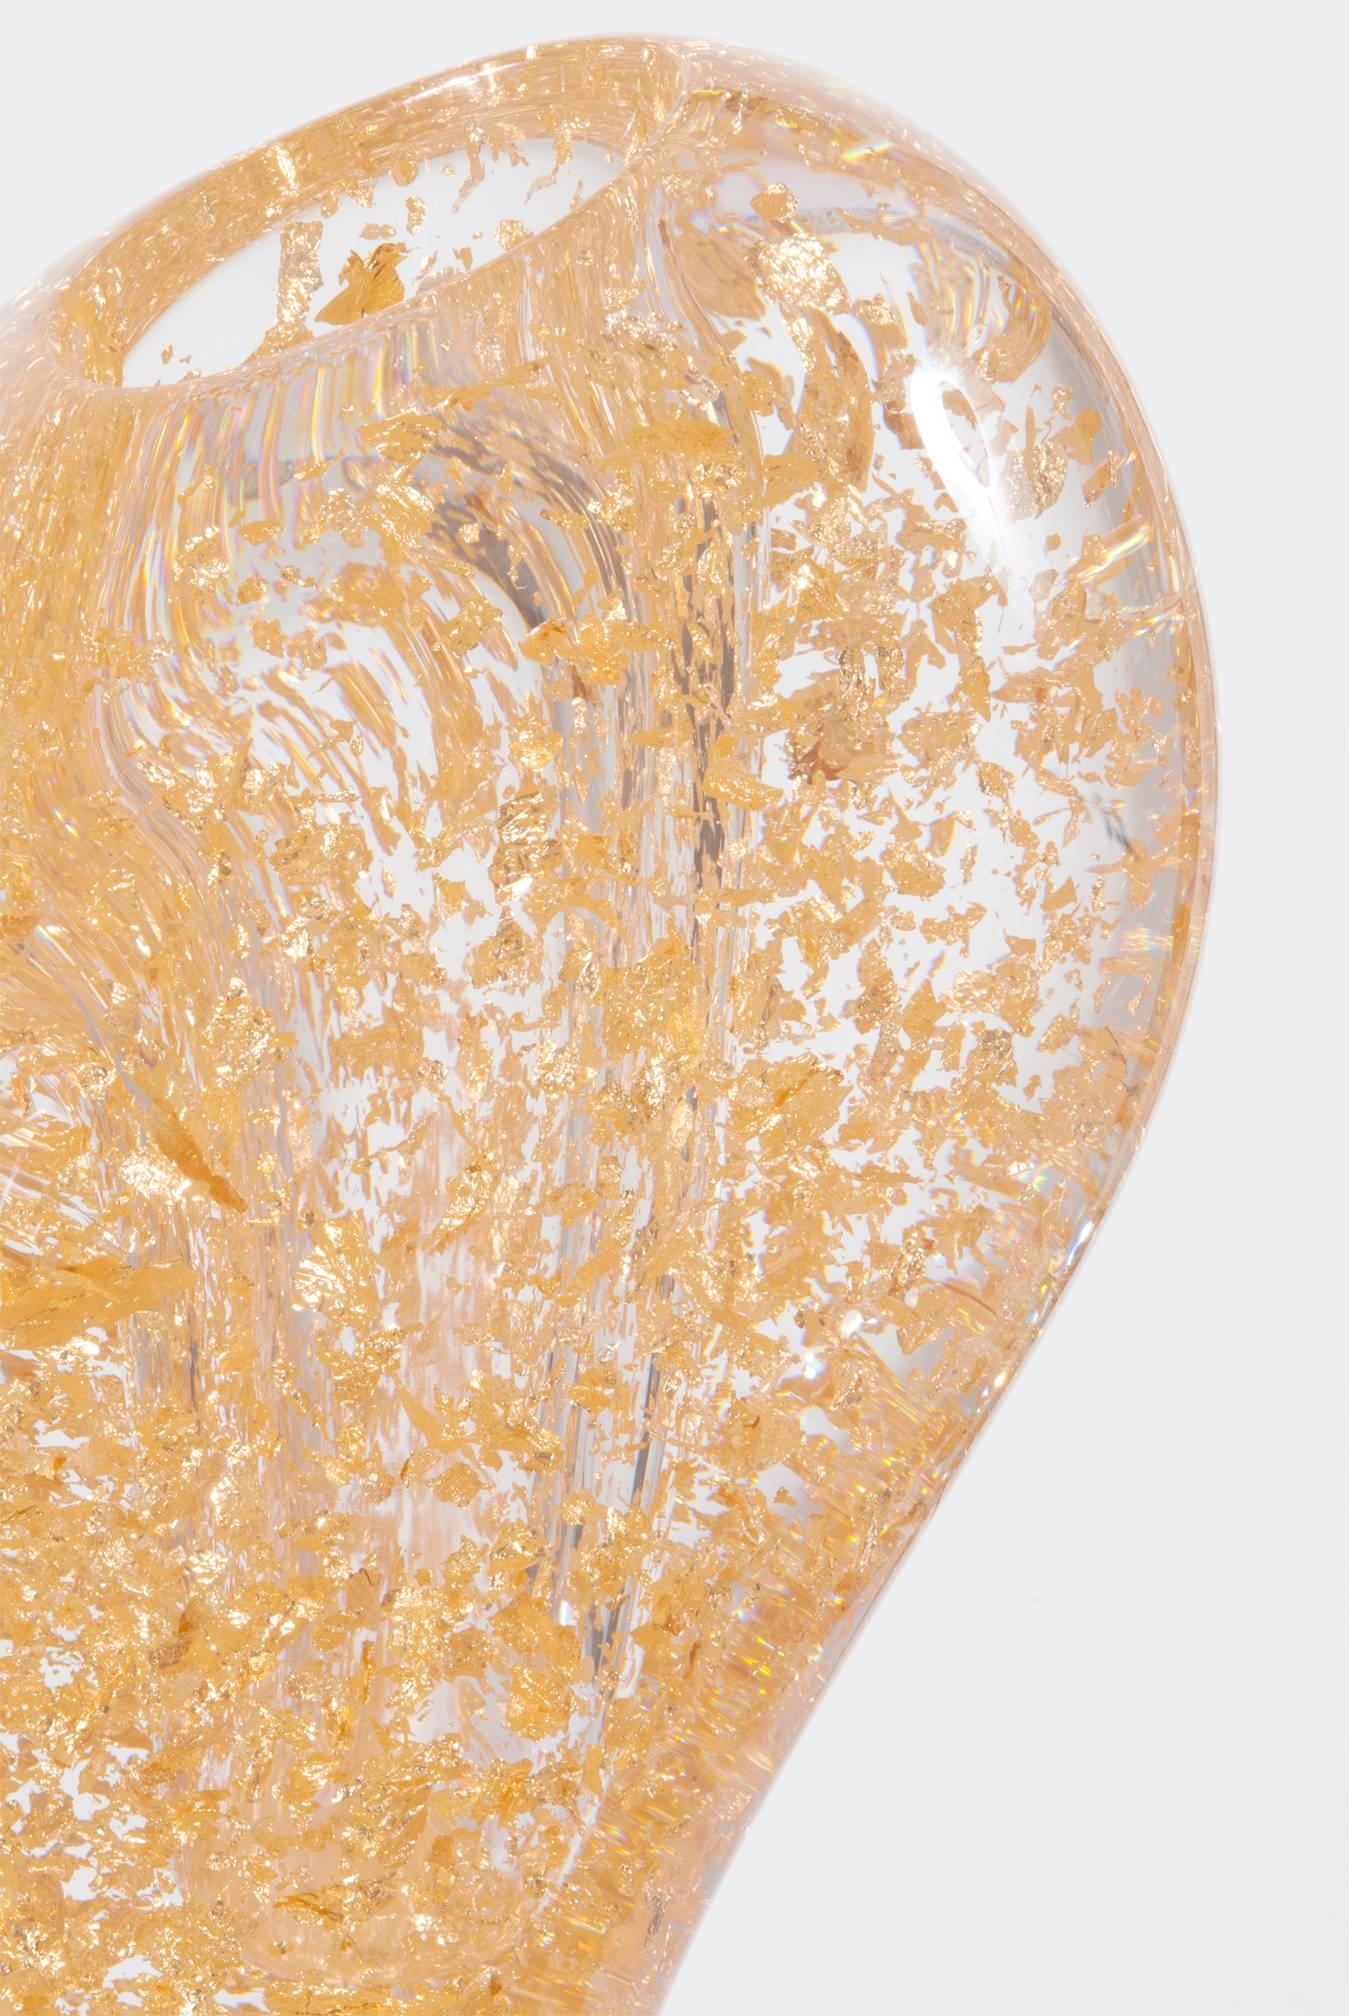 Eine wunderschöne Vase aus Plexiglas mit Goldfolienfragmenten, entworfen von Andrea Branzi und hergestellt von Superego Editions. Limitierte Auflage neun Stück. Signiert und nummeriert. Prototyp.

Biografie
Branzi studierte Architektur und Design